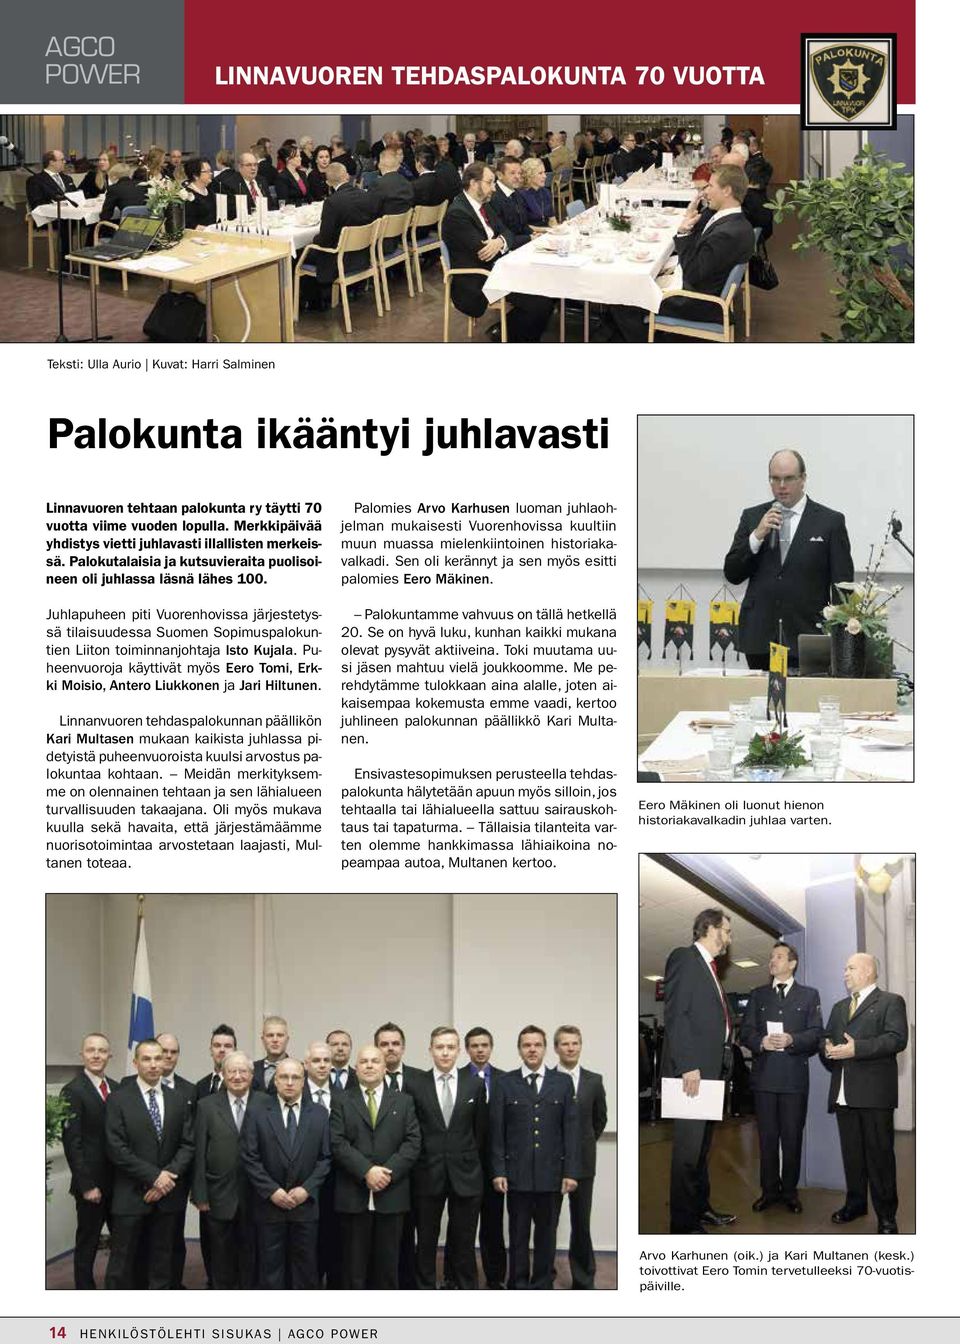 Juhlapuheen piti Vuorenhovissa järjestetyssä tilaisuudessa Suomen Sopimuspalokuntien Liiton toiminnanjohtaja Isto Kujala.